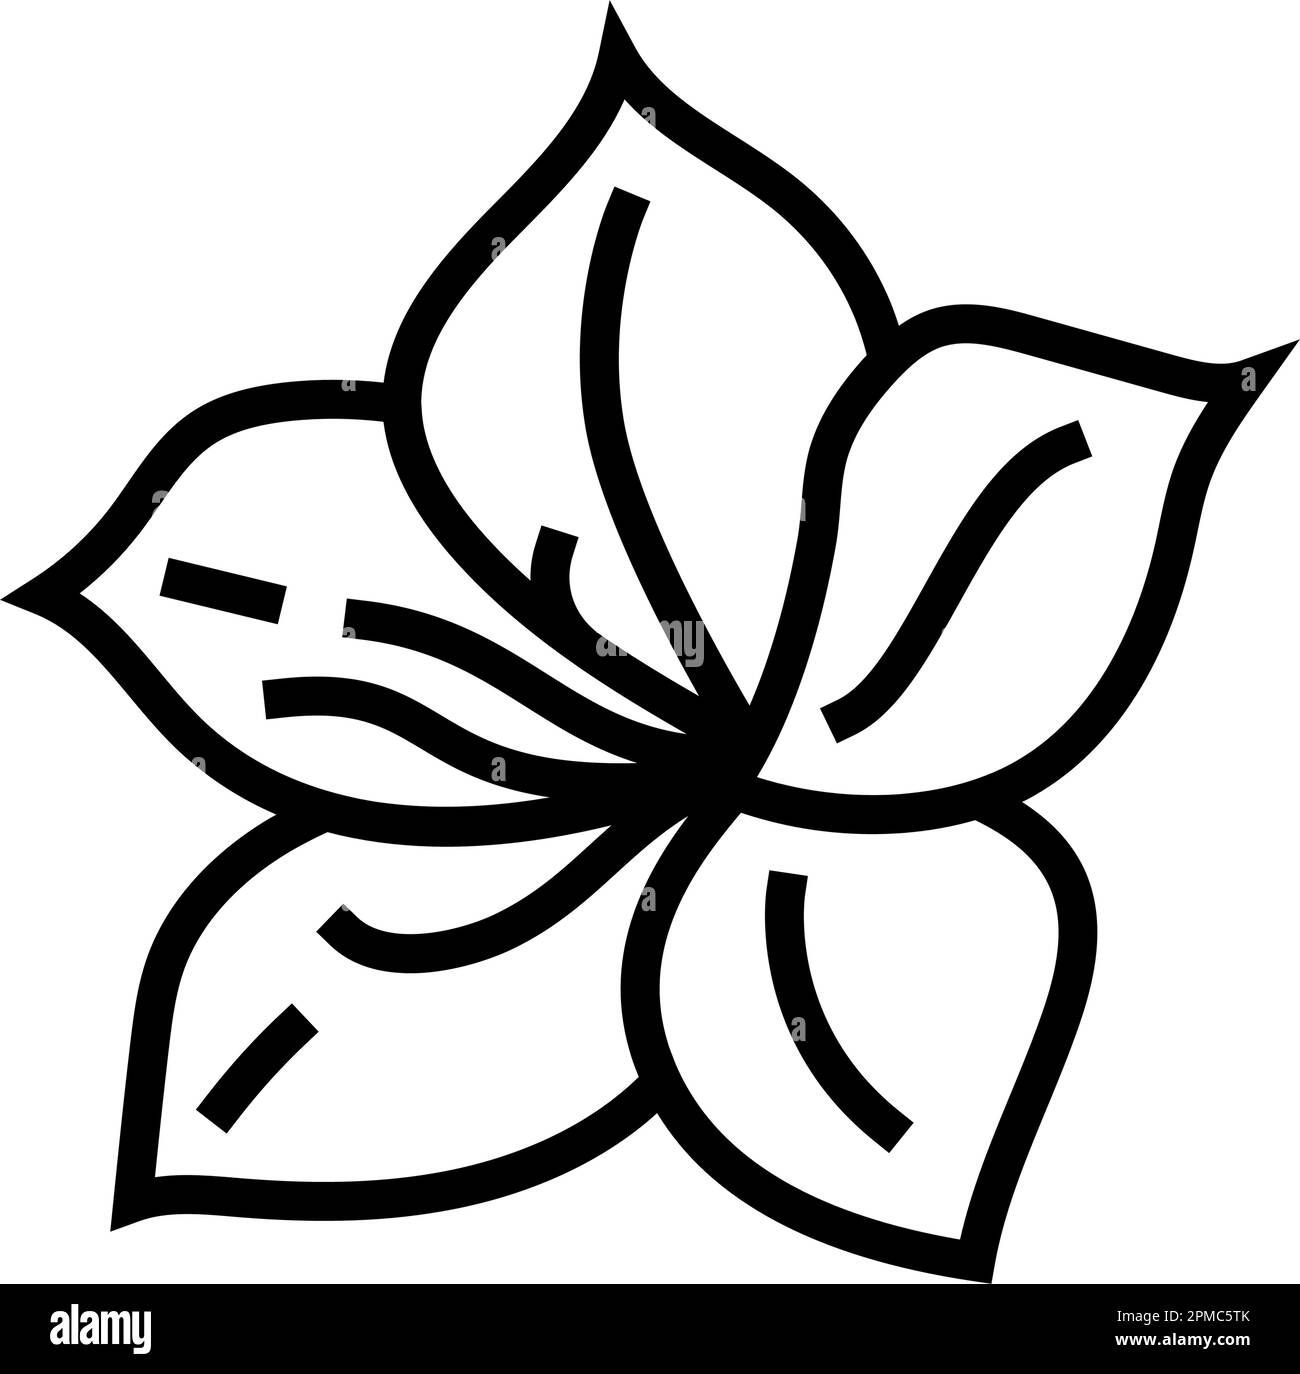 vektordarstellung des Symbols für die azalea-Blüte mit Federlinie Stock Vektor